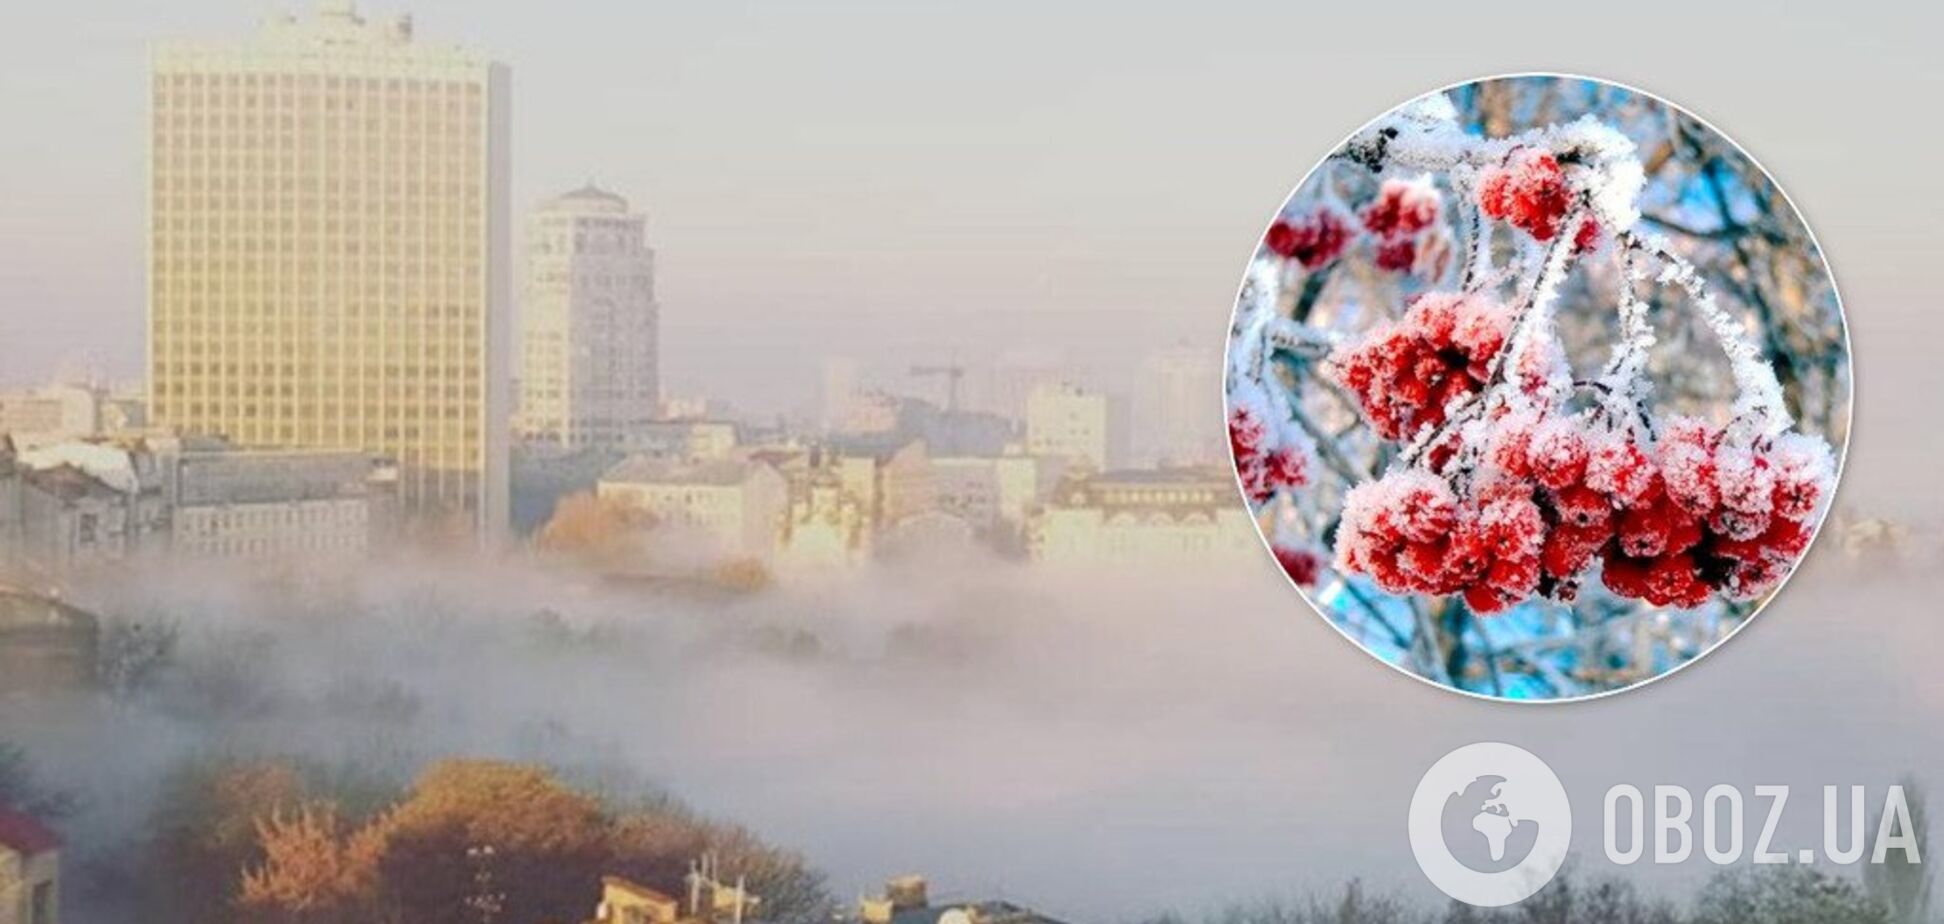 Тумани і паморозь: синоптикиня розповіла, коли до України прийдуть опади